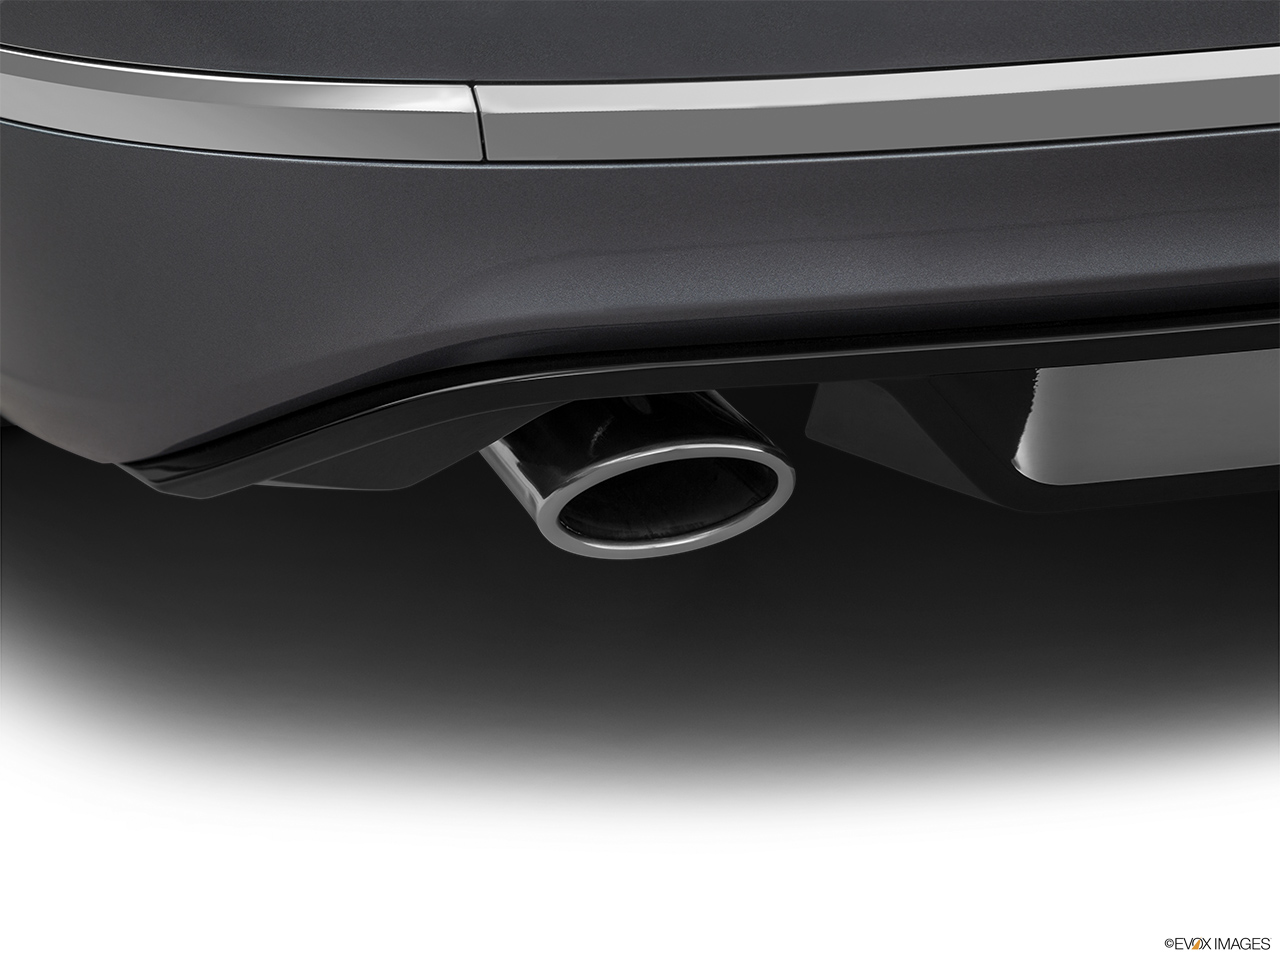 2018 Volkswagen Passat R-Line Chrome tip exhaust pipe. 